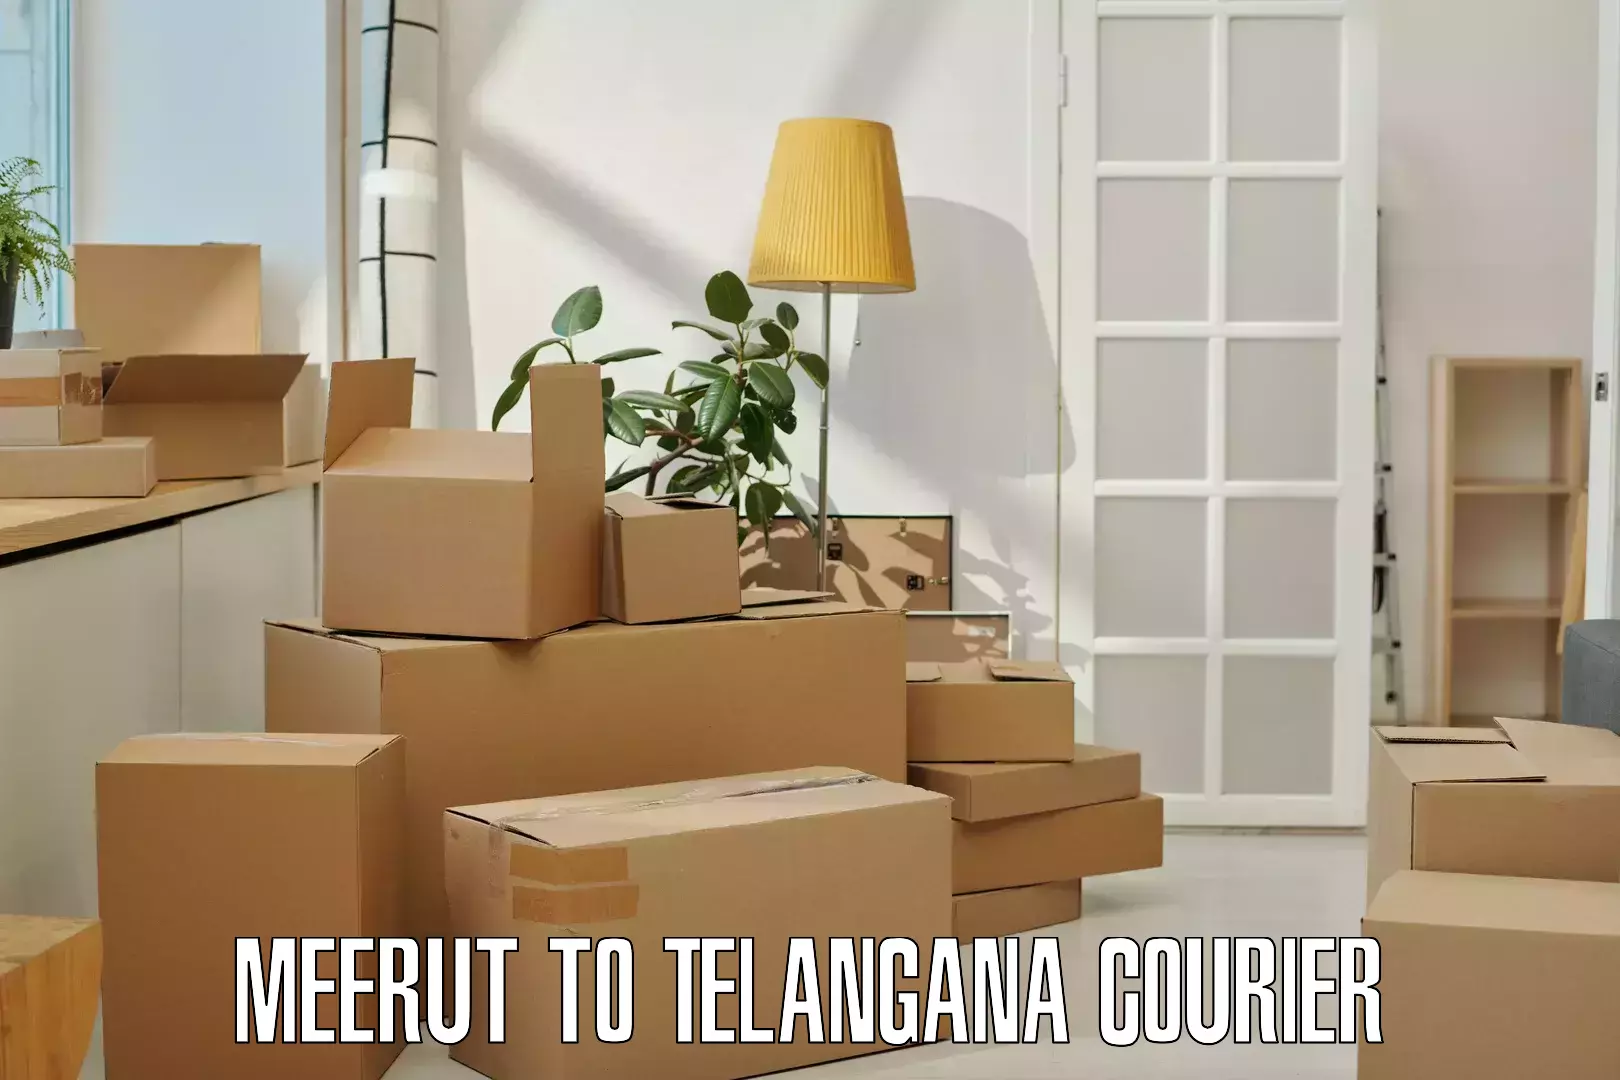 Fastest parcel delivery Meerut to Narsampet